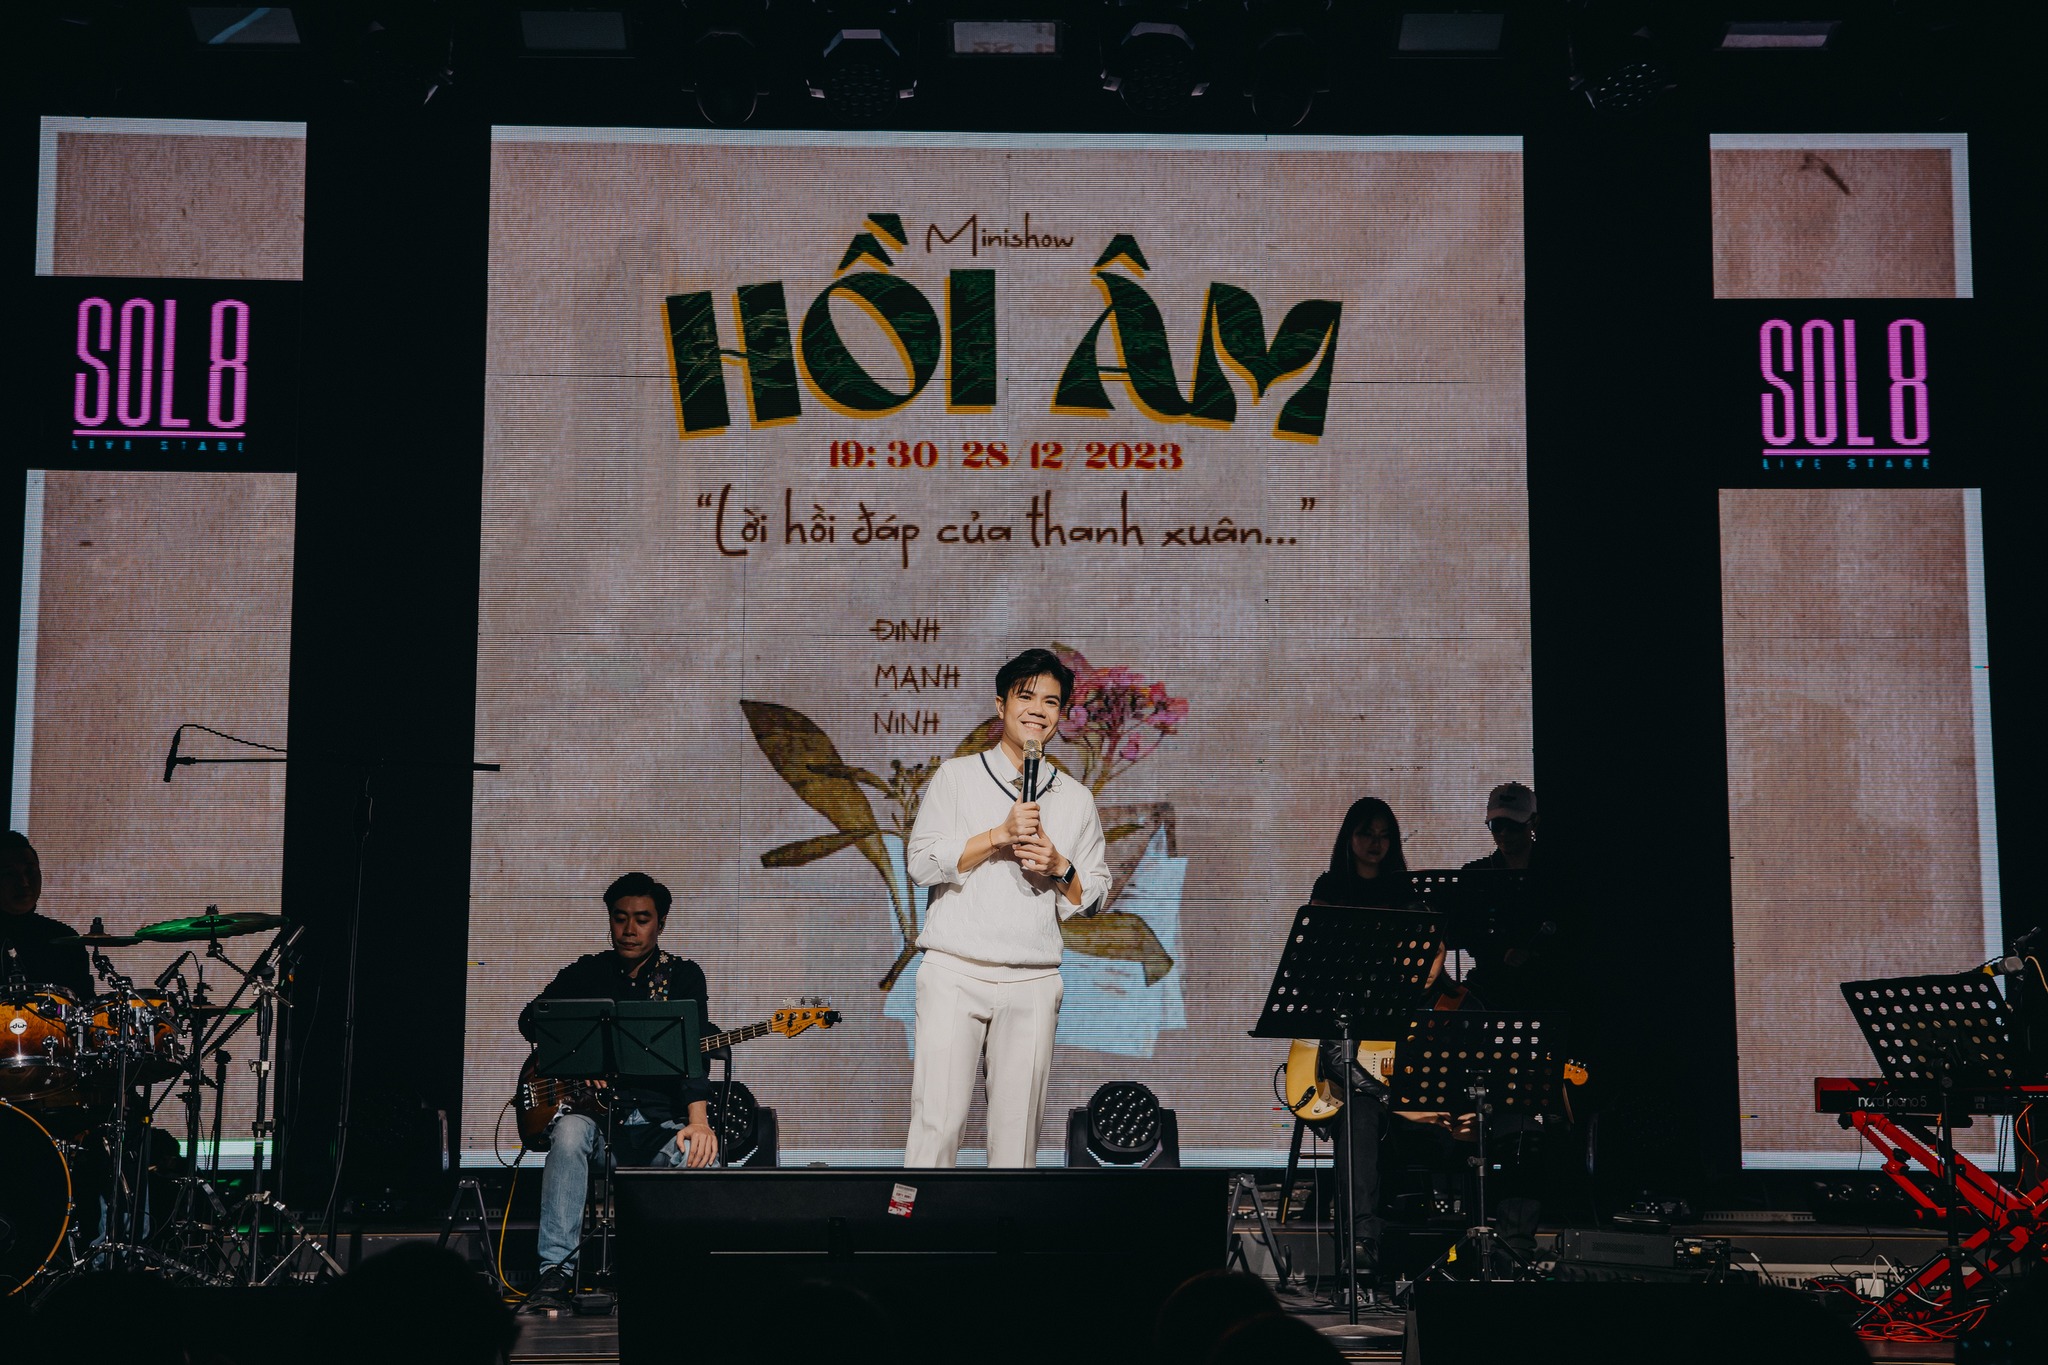 Mini Concert “Hồi Âm” của Đinh Mạnh Ninh